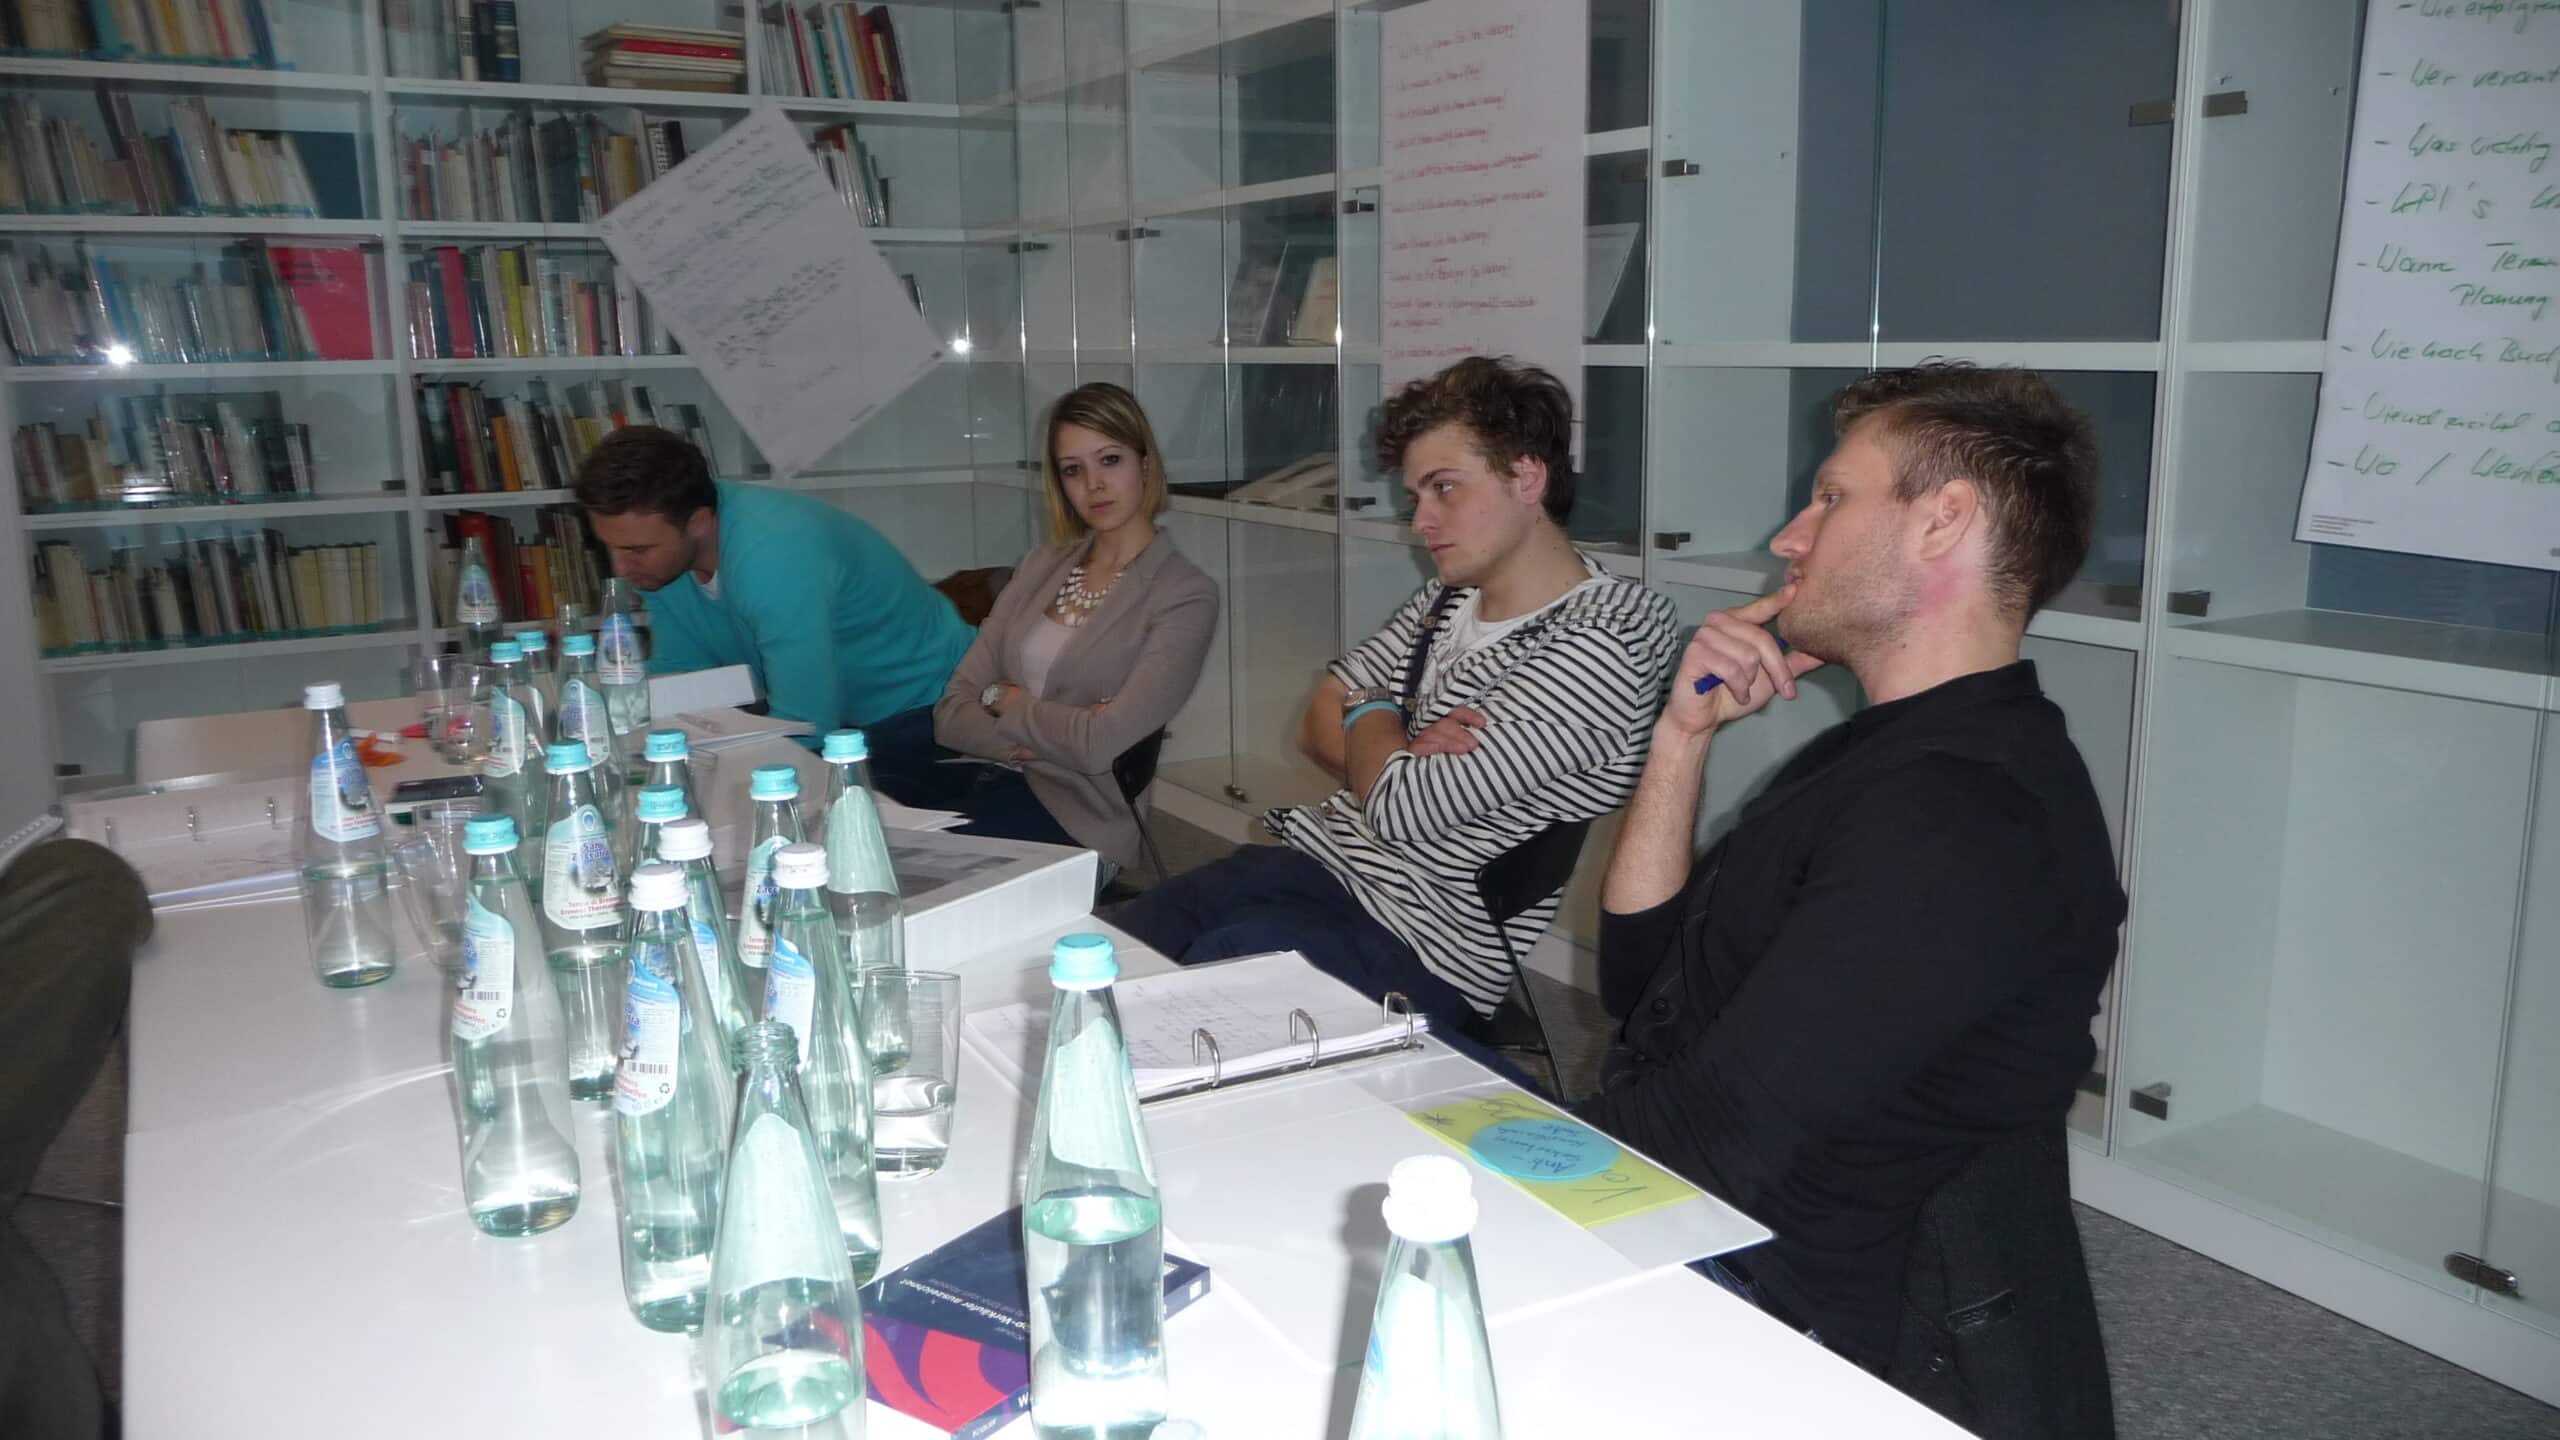 verkaufstraining münchen ulrike knauer training consulting vortrag profil verkauf verhandlung